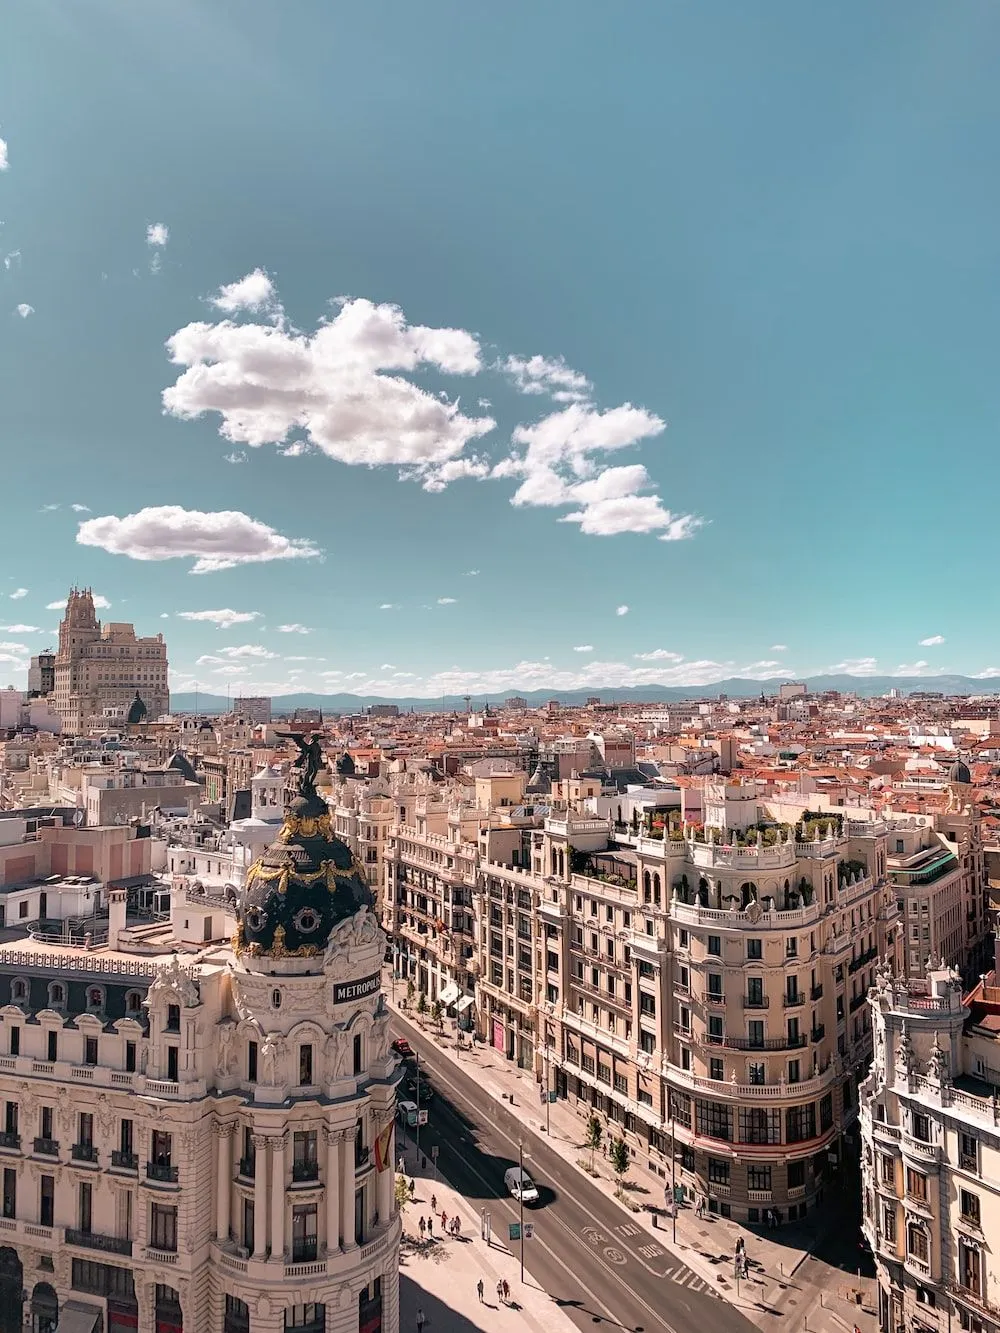 500+ Fotos de Madrid | Descargar imágenes gratis en Unsplash